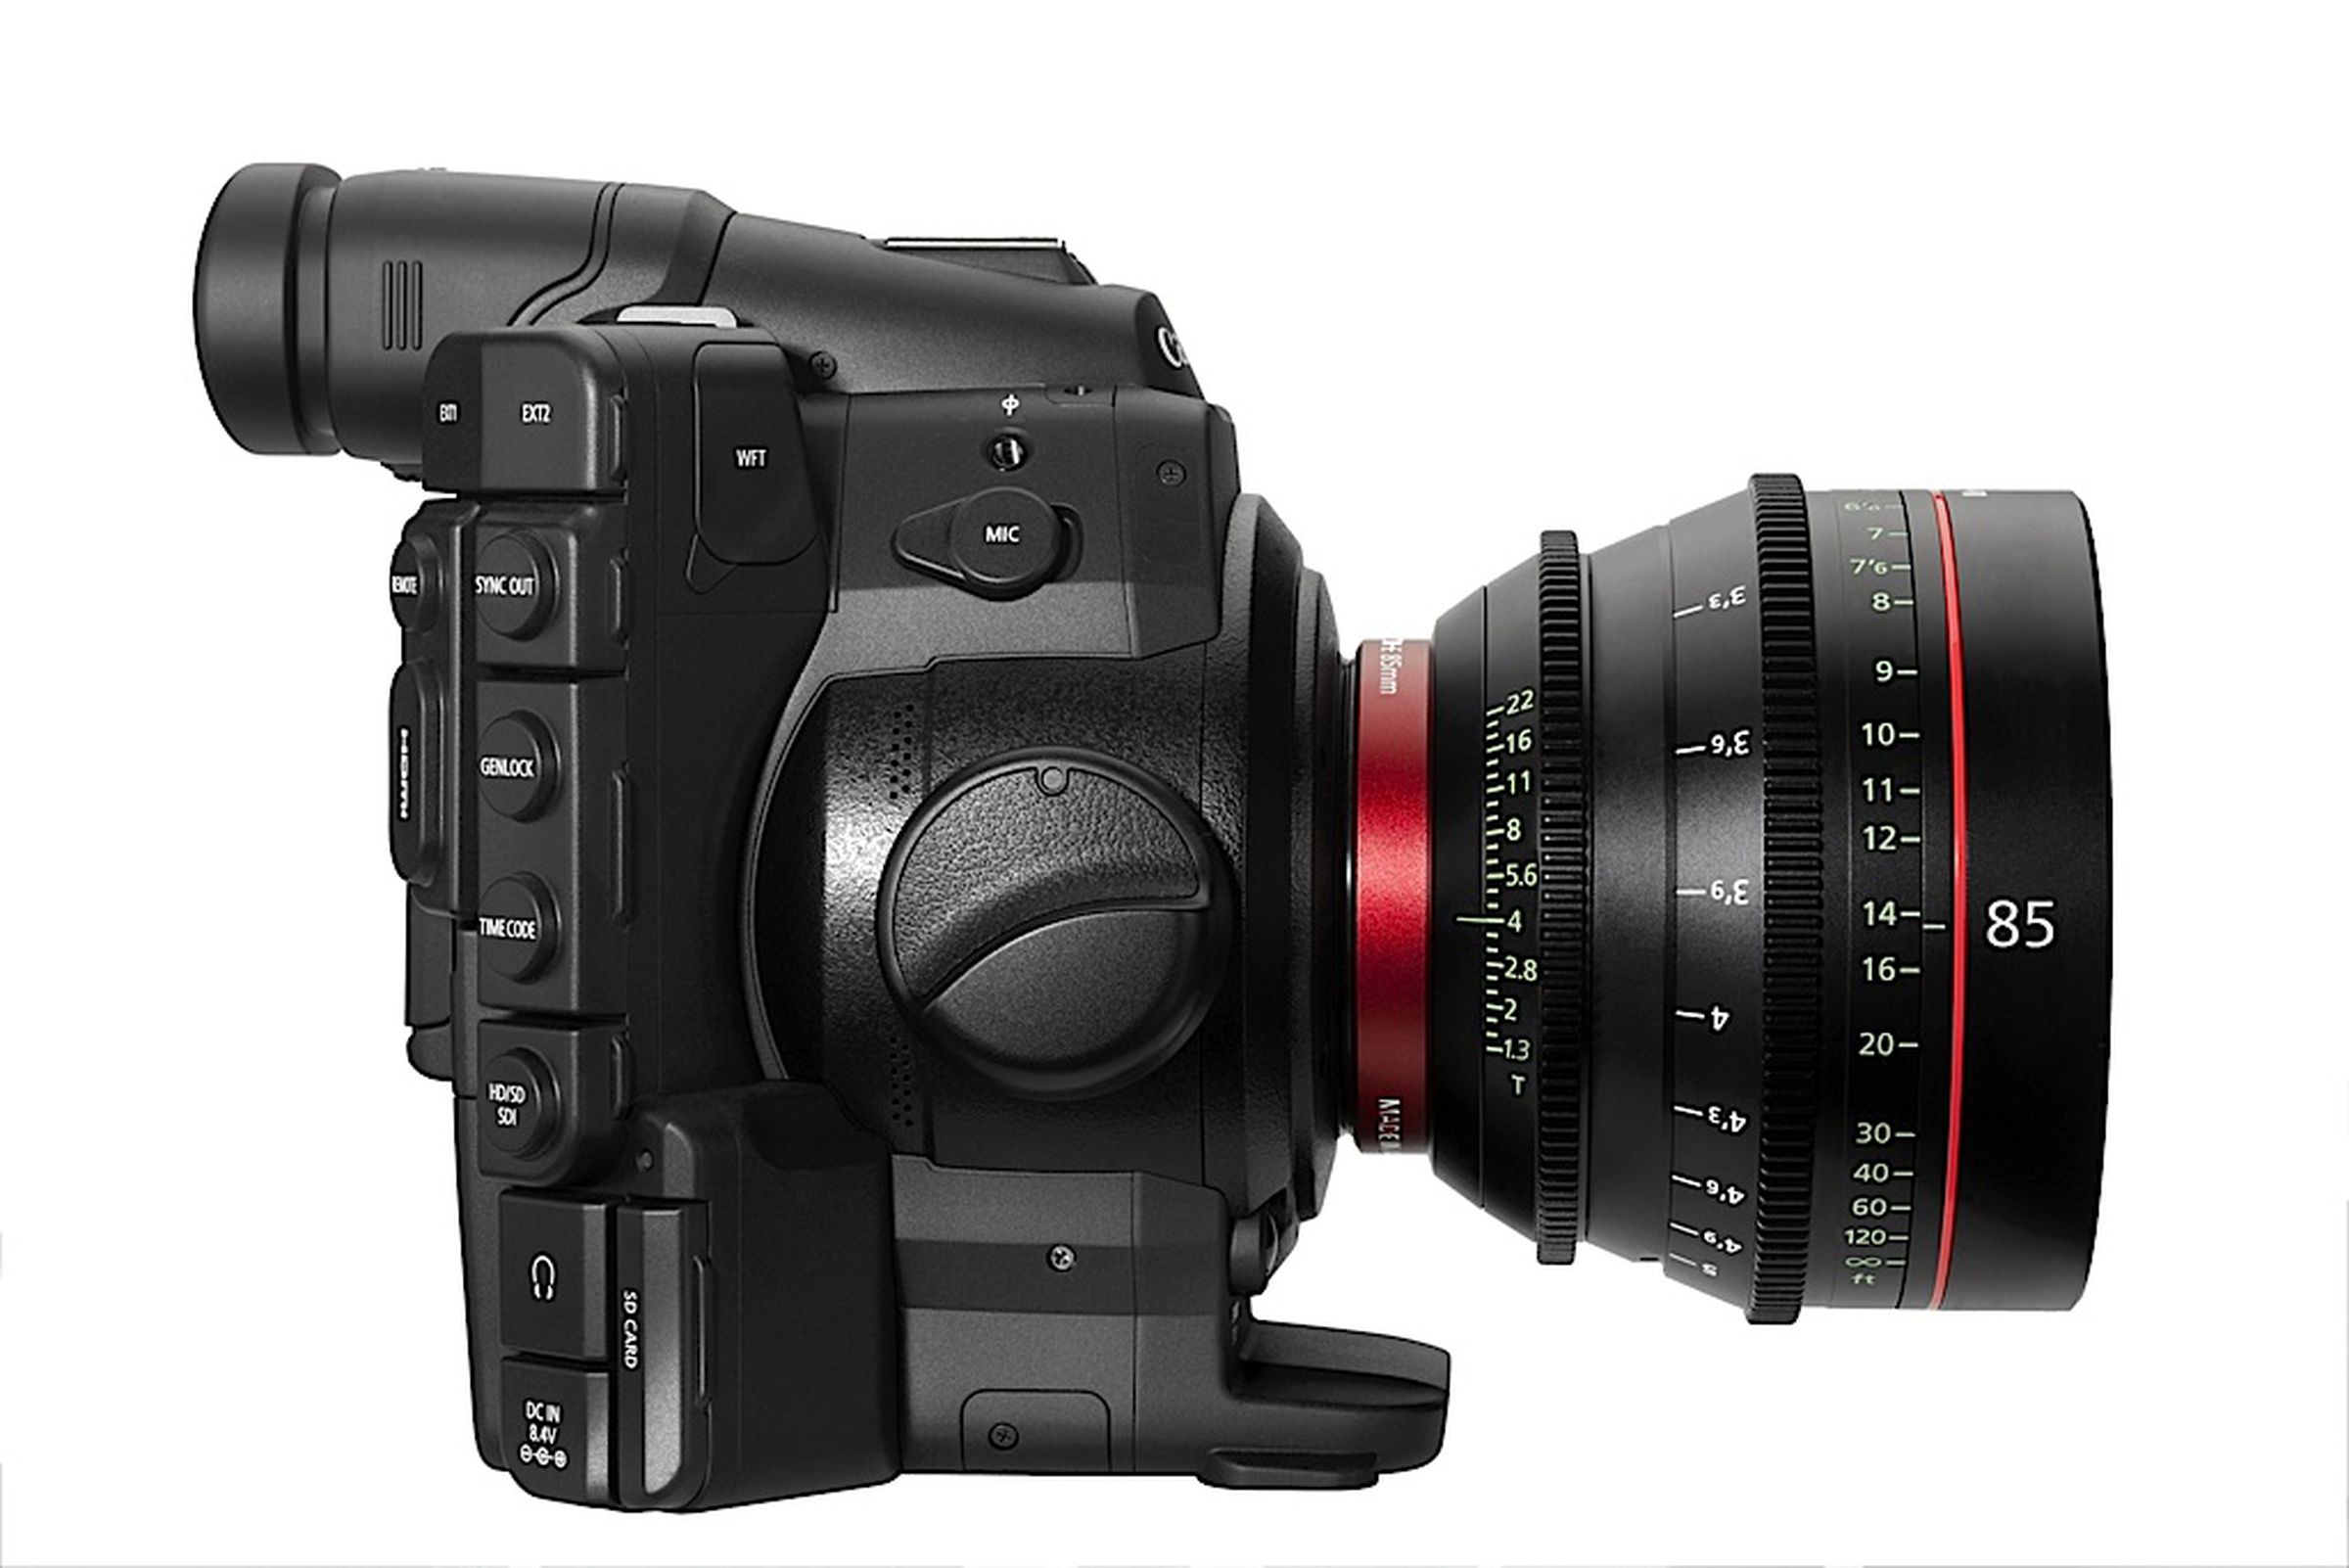 Canon EOS C300 press shots